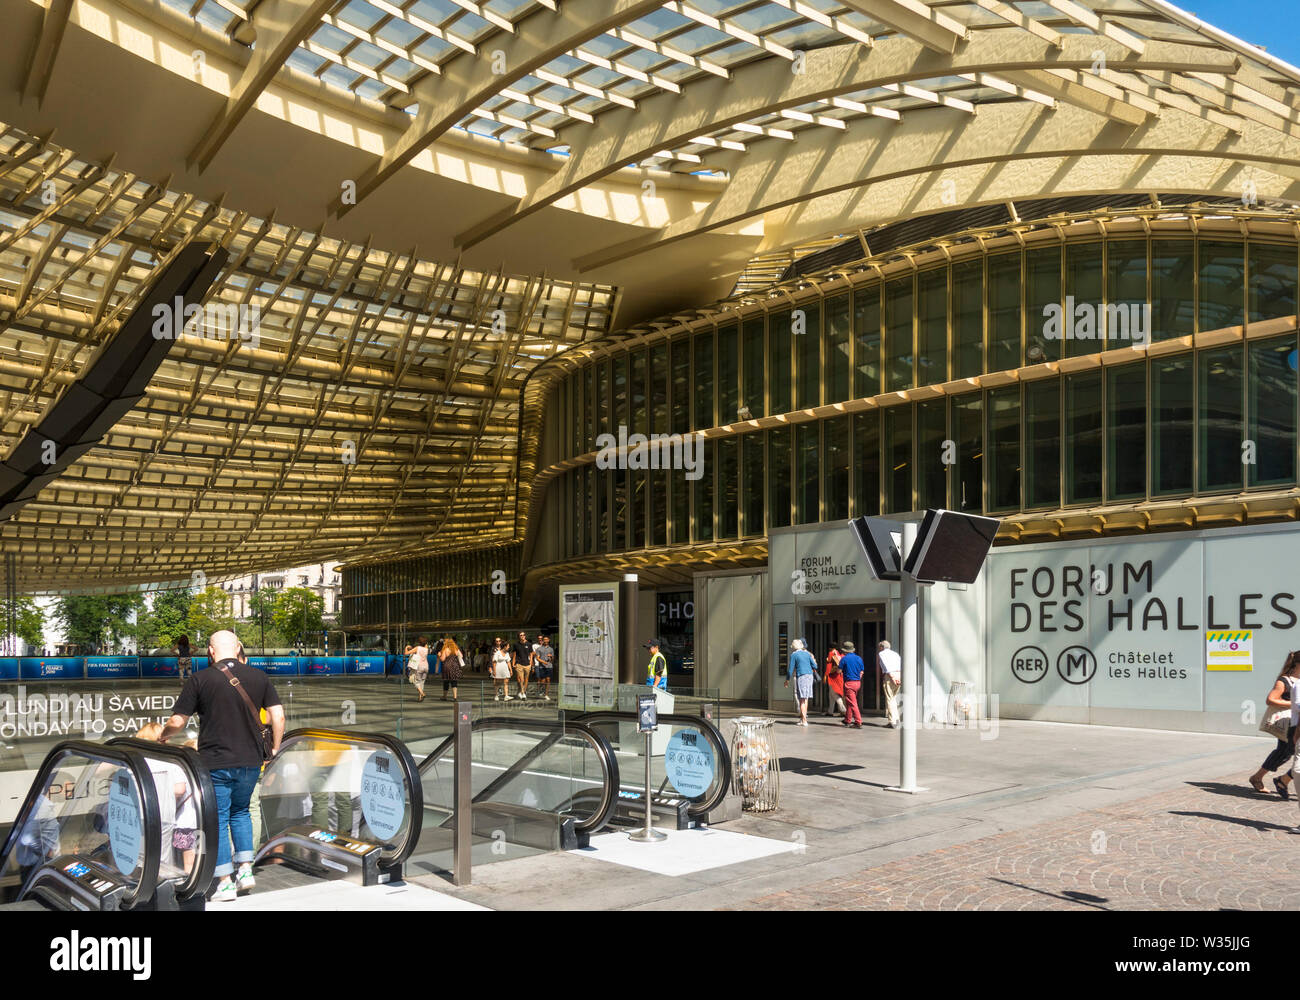 Entrance to the Forum des Halles shopping centre in Les Halles Paris France Stock Photo